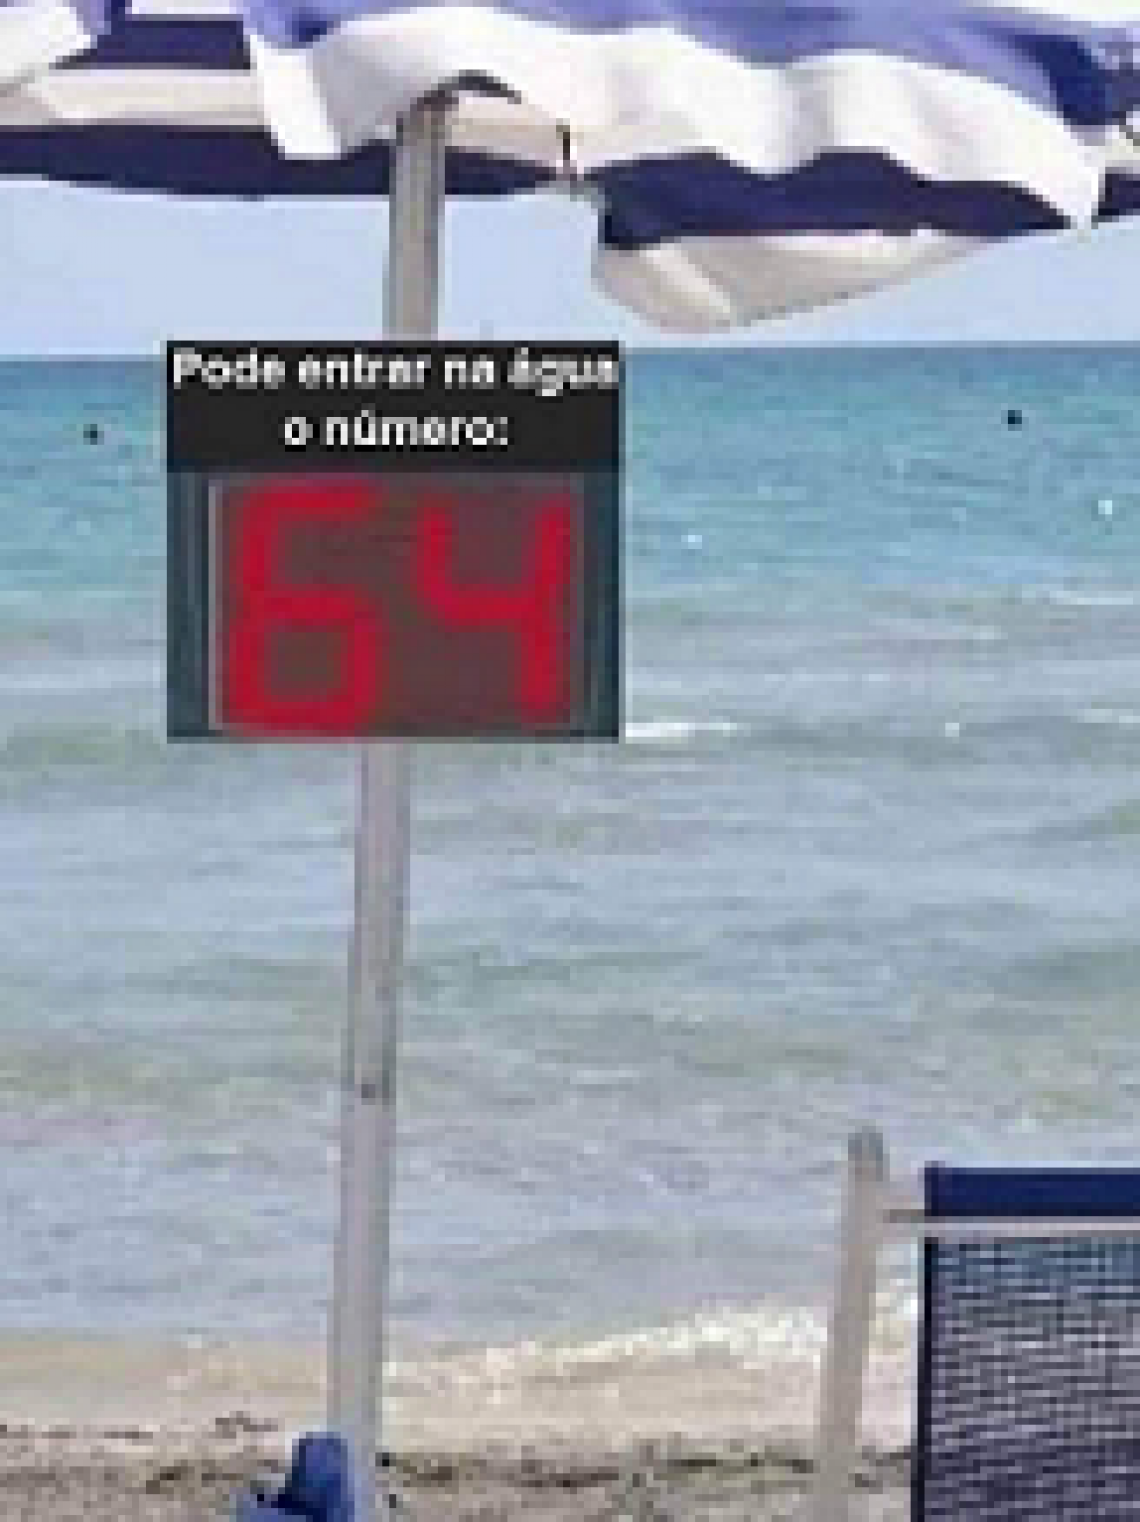 Parasol de plage avec numéro